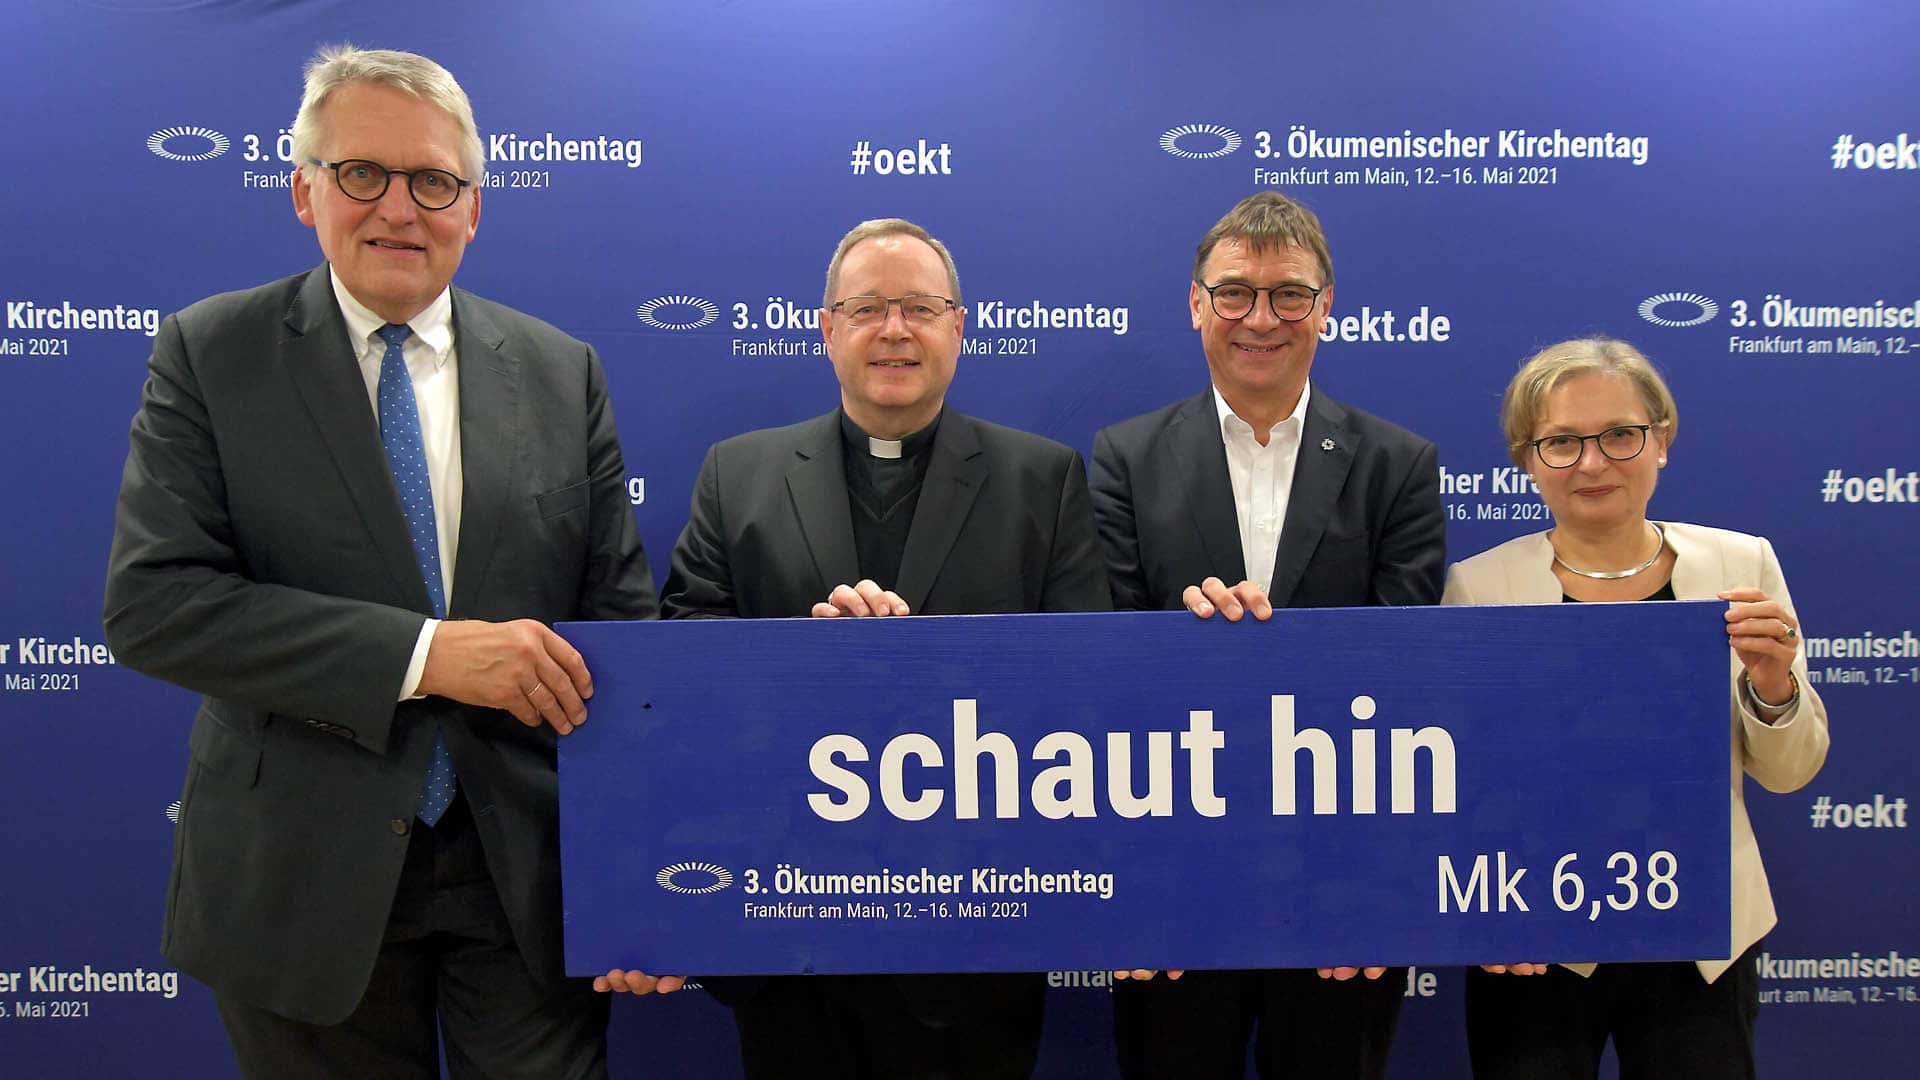 Immer noch ungewiss ist die Zukunft des dritten Ökumenischen Kirchentags, der im Mai in Frankfurt am Main stattfinden soll